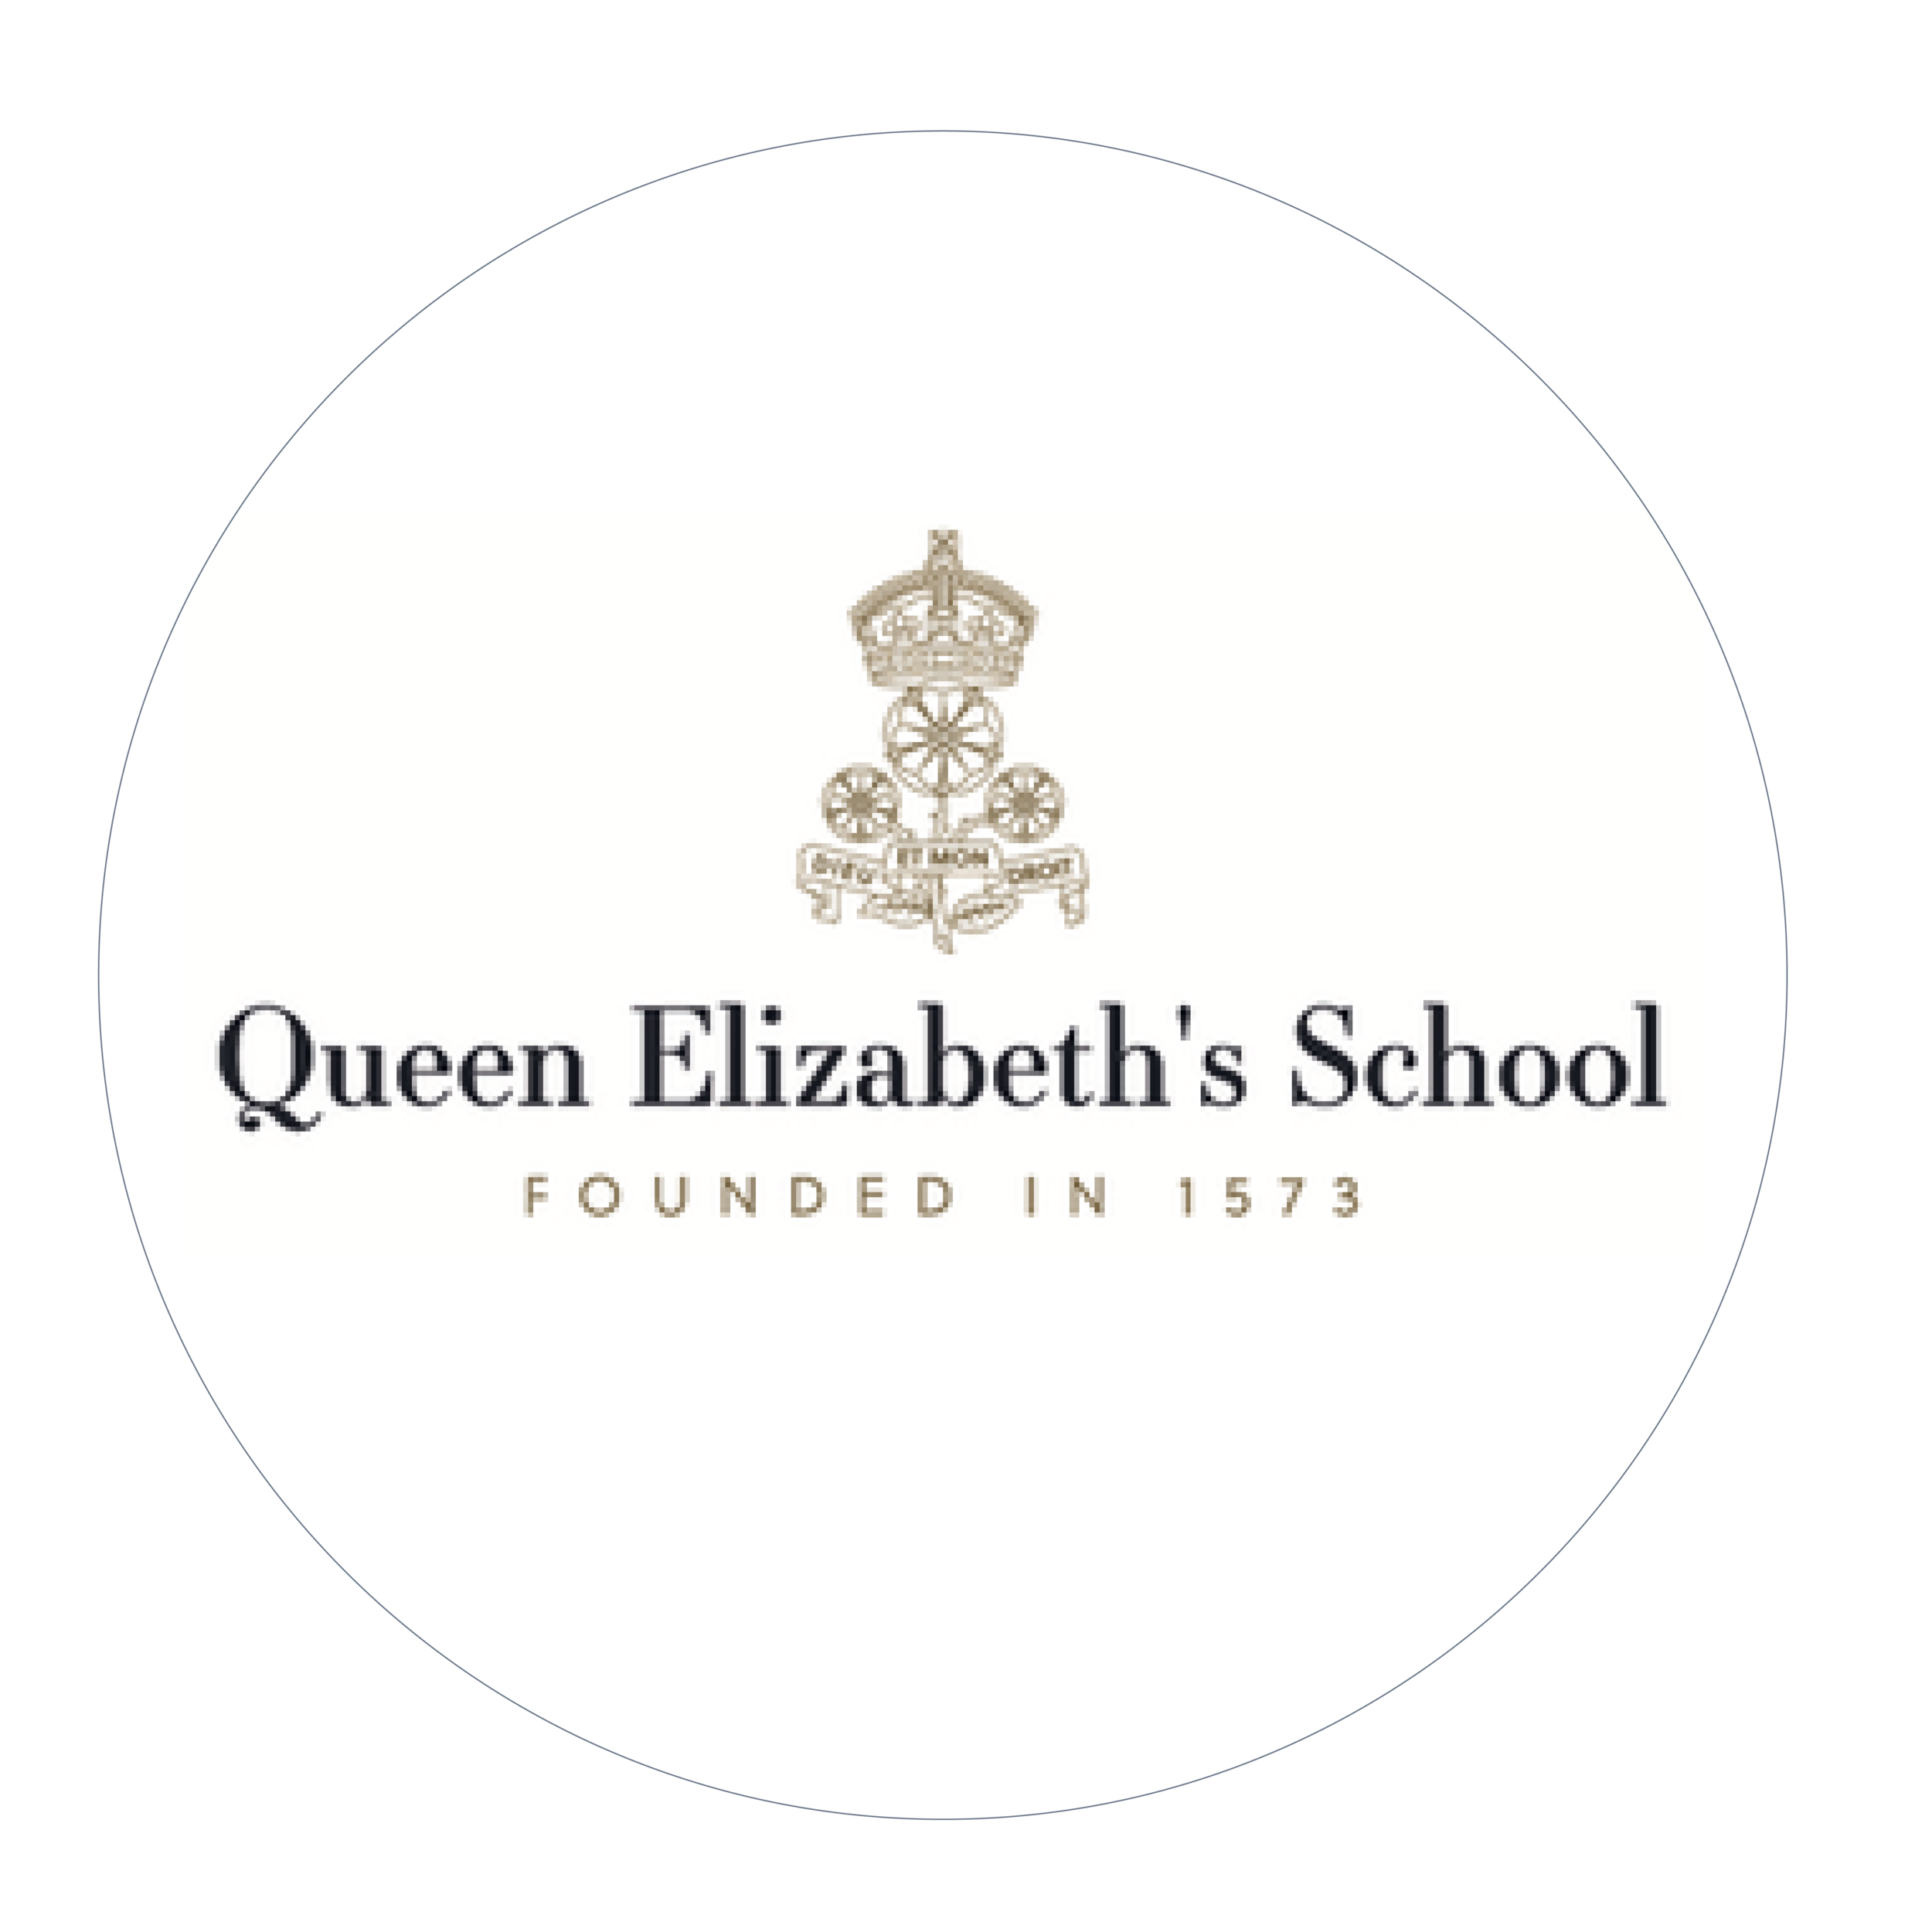 Queen Elizabeth's School